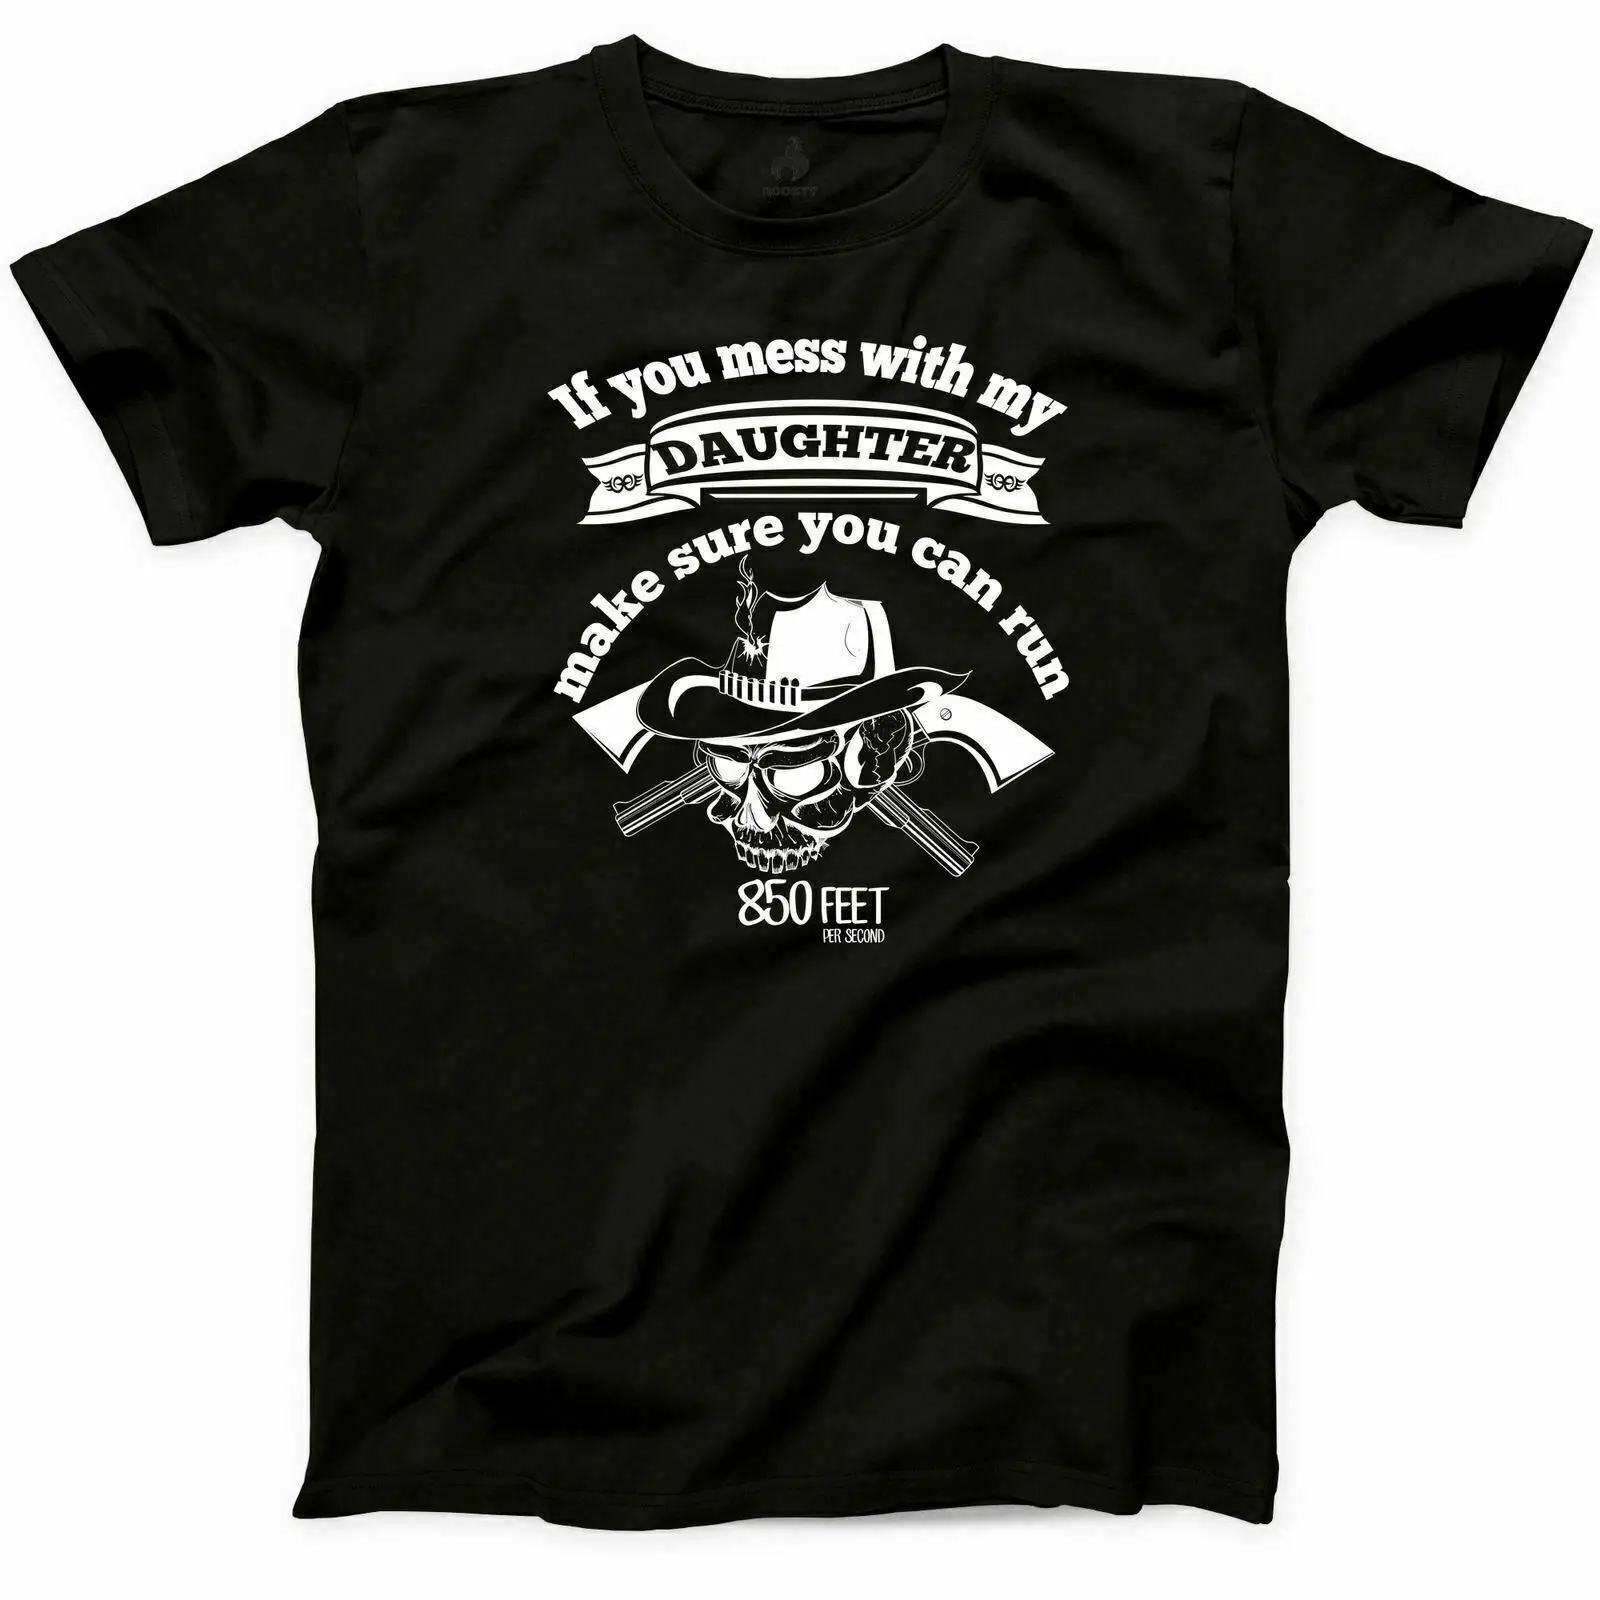 2019 летняя модная футболка с надписью «If You Mess With My Daughter», забавный подарок на день отца, футболка в стиле хип-хоп